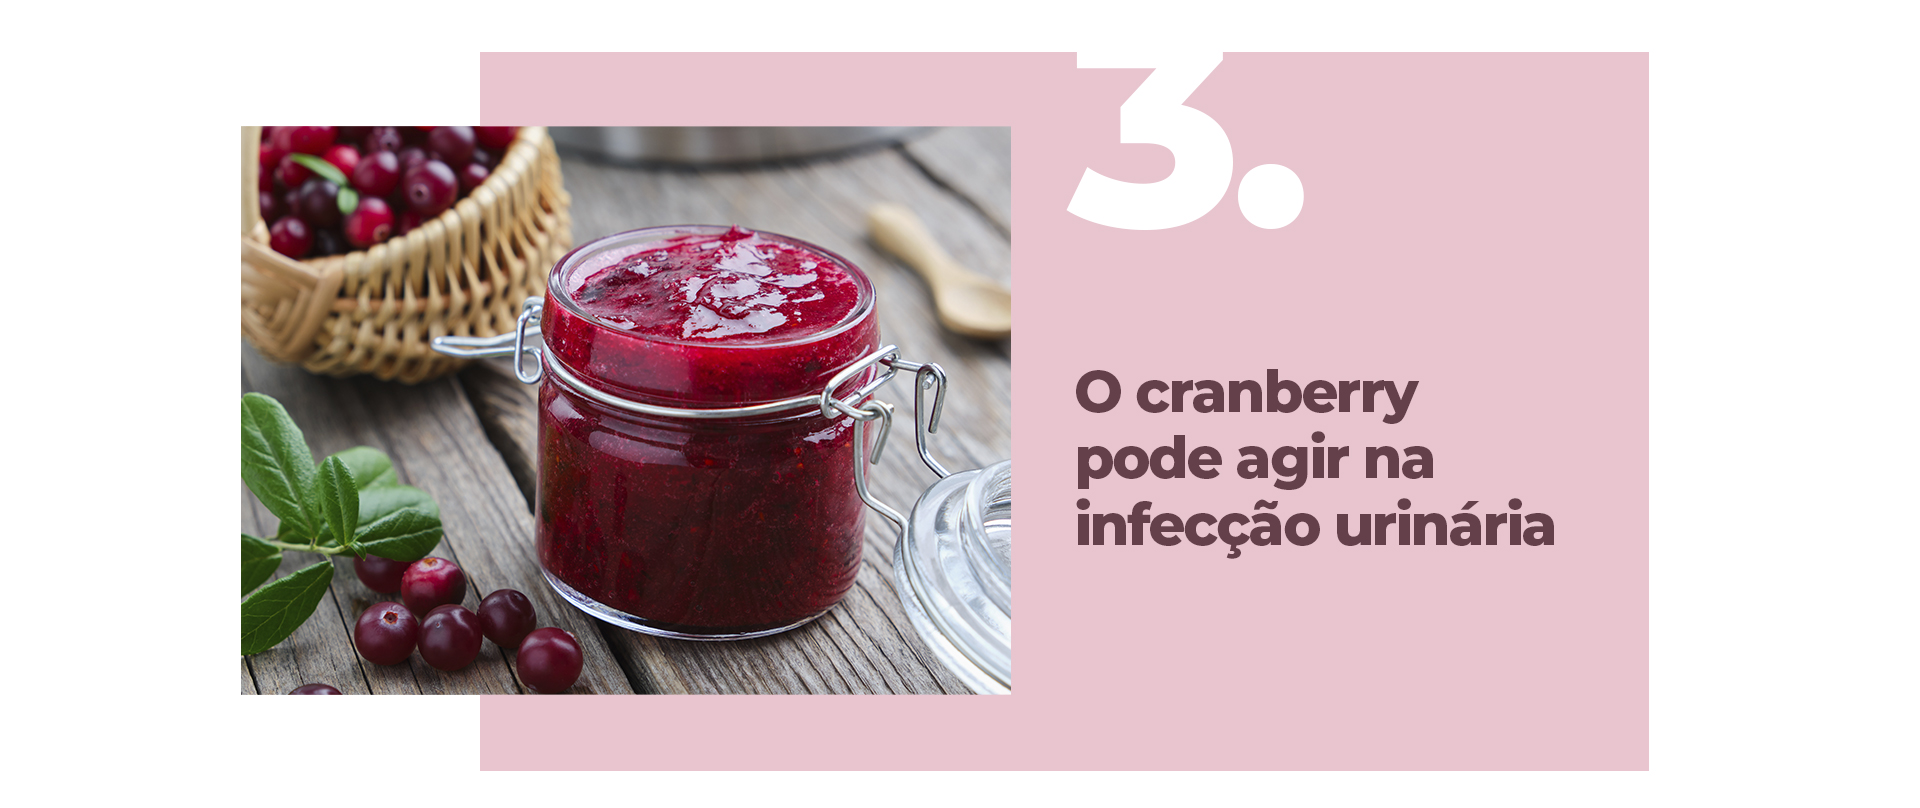 o cranberry pode agir na infecção urinária